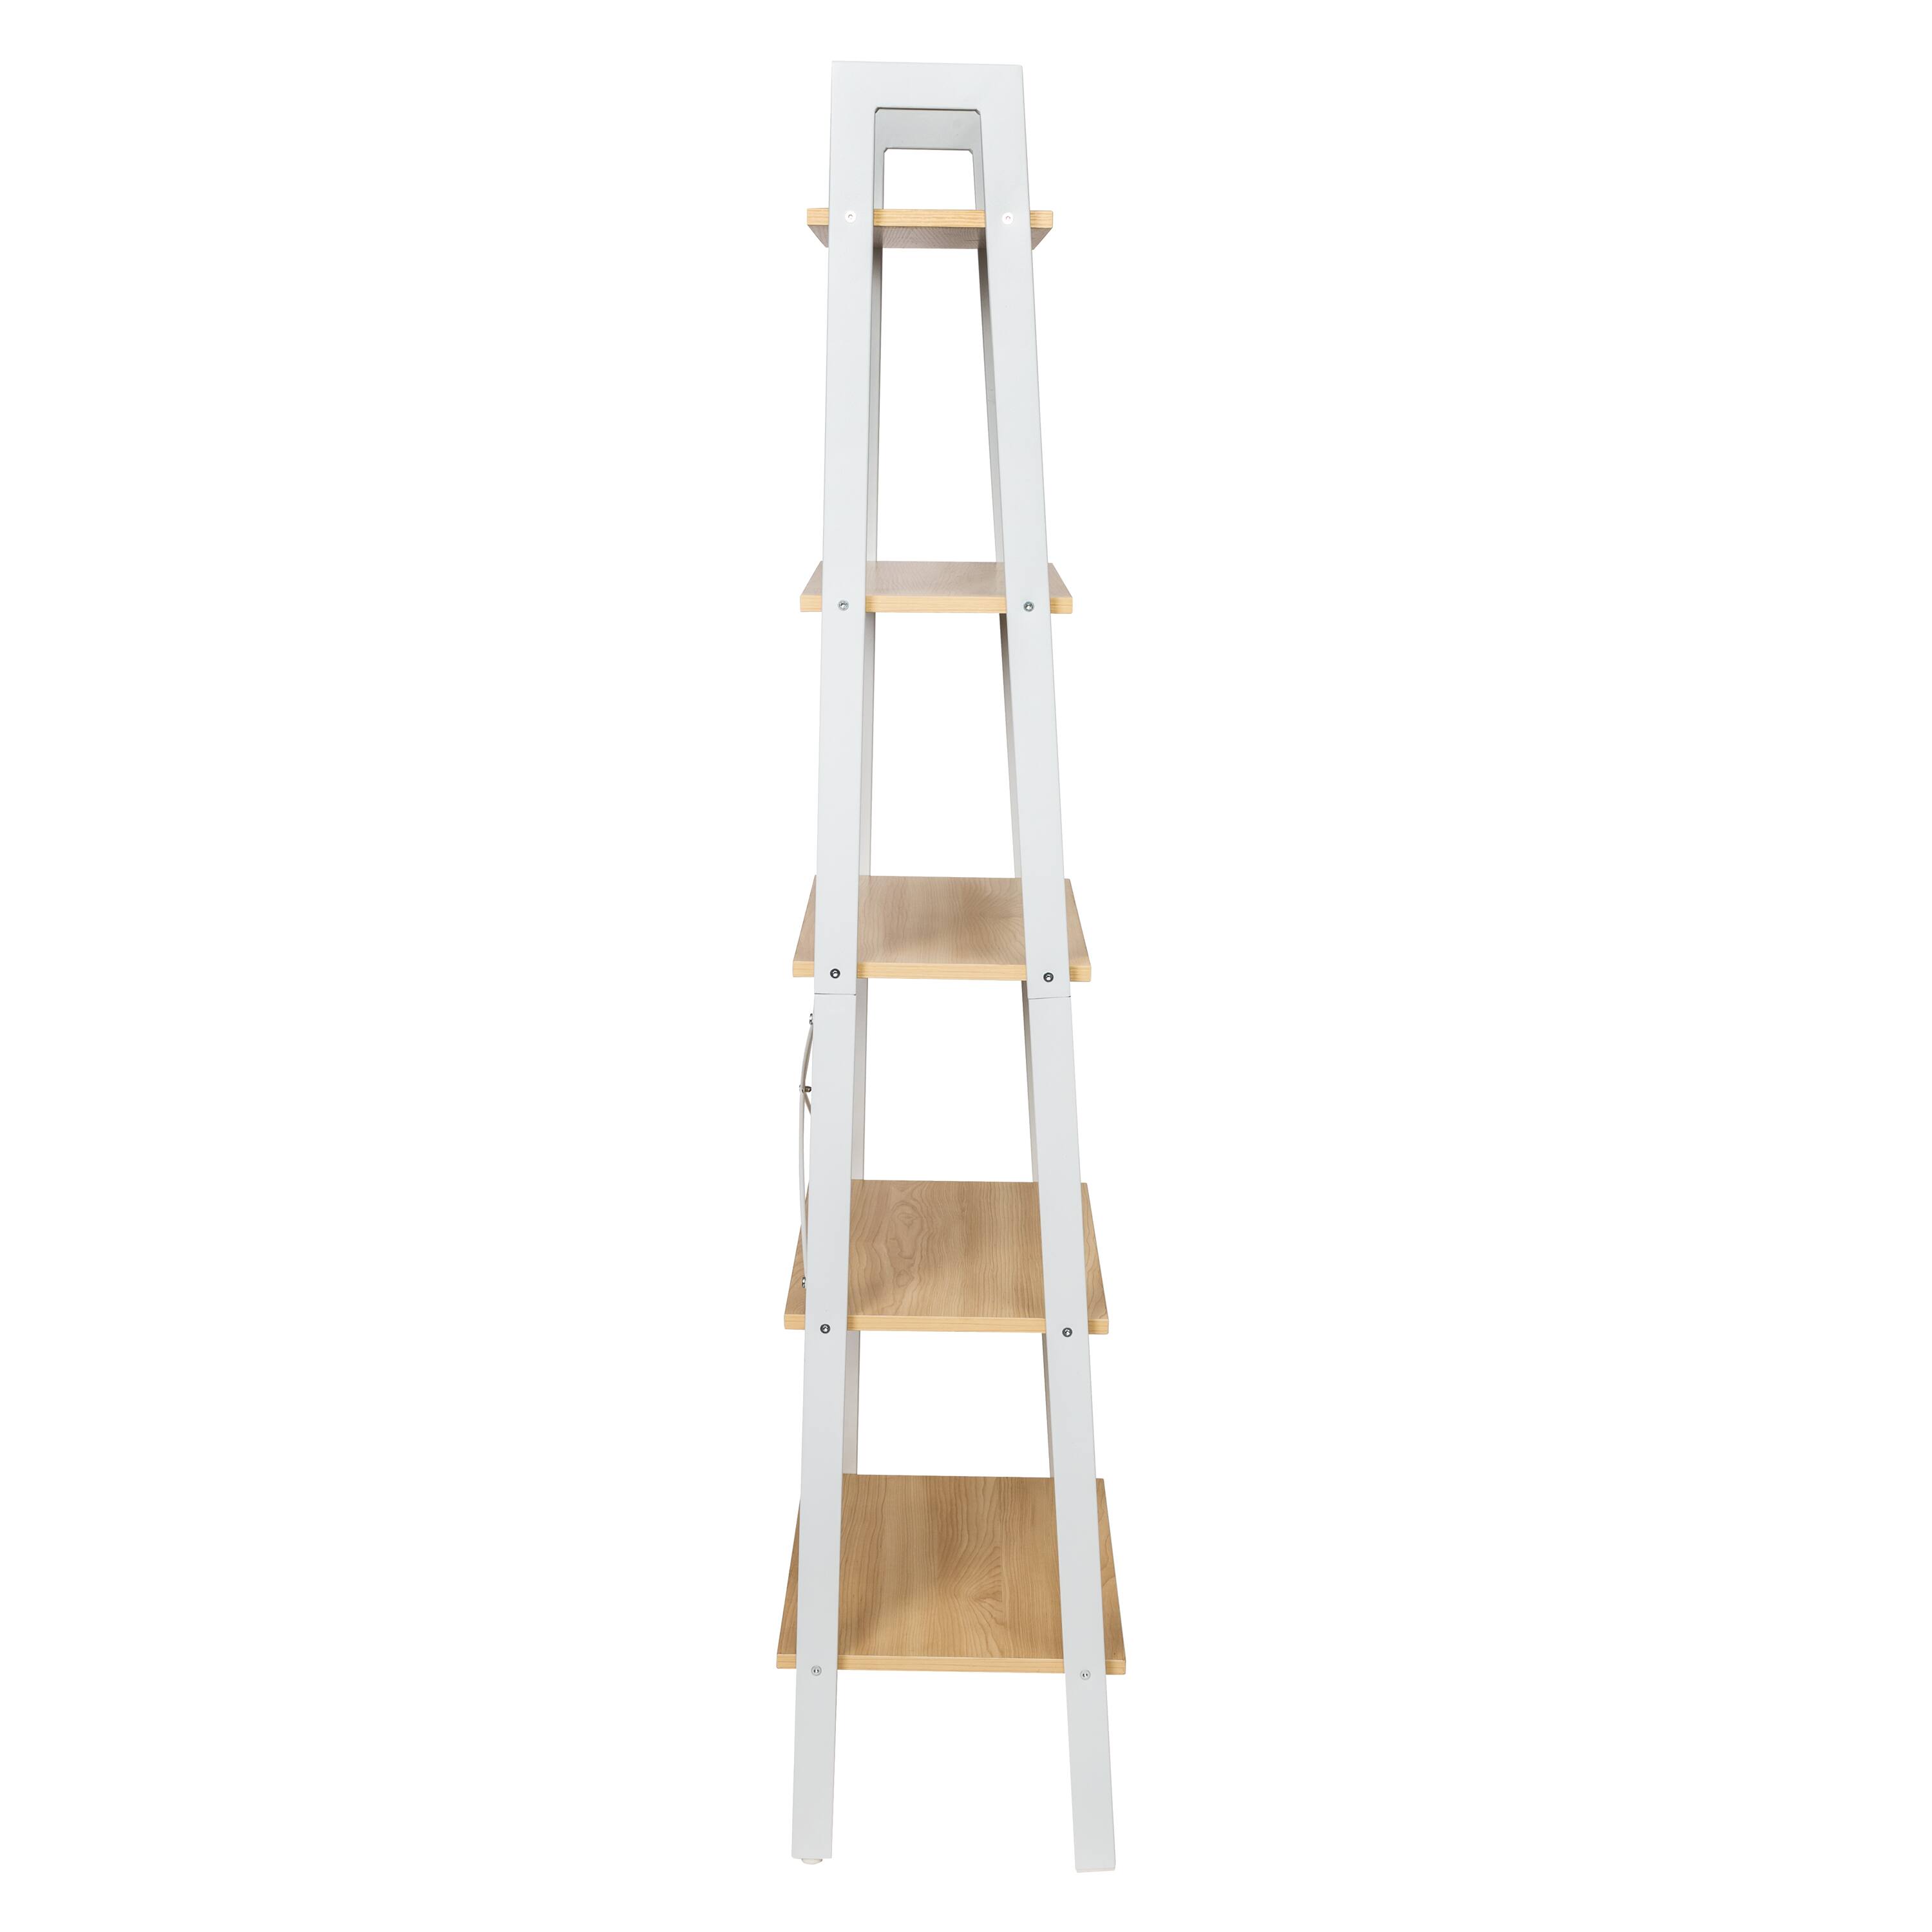 Honey Can Do 5-Tier A-Frame Ladder Shelf